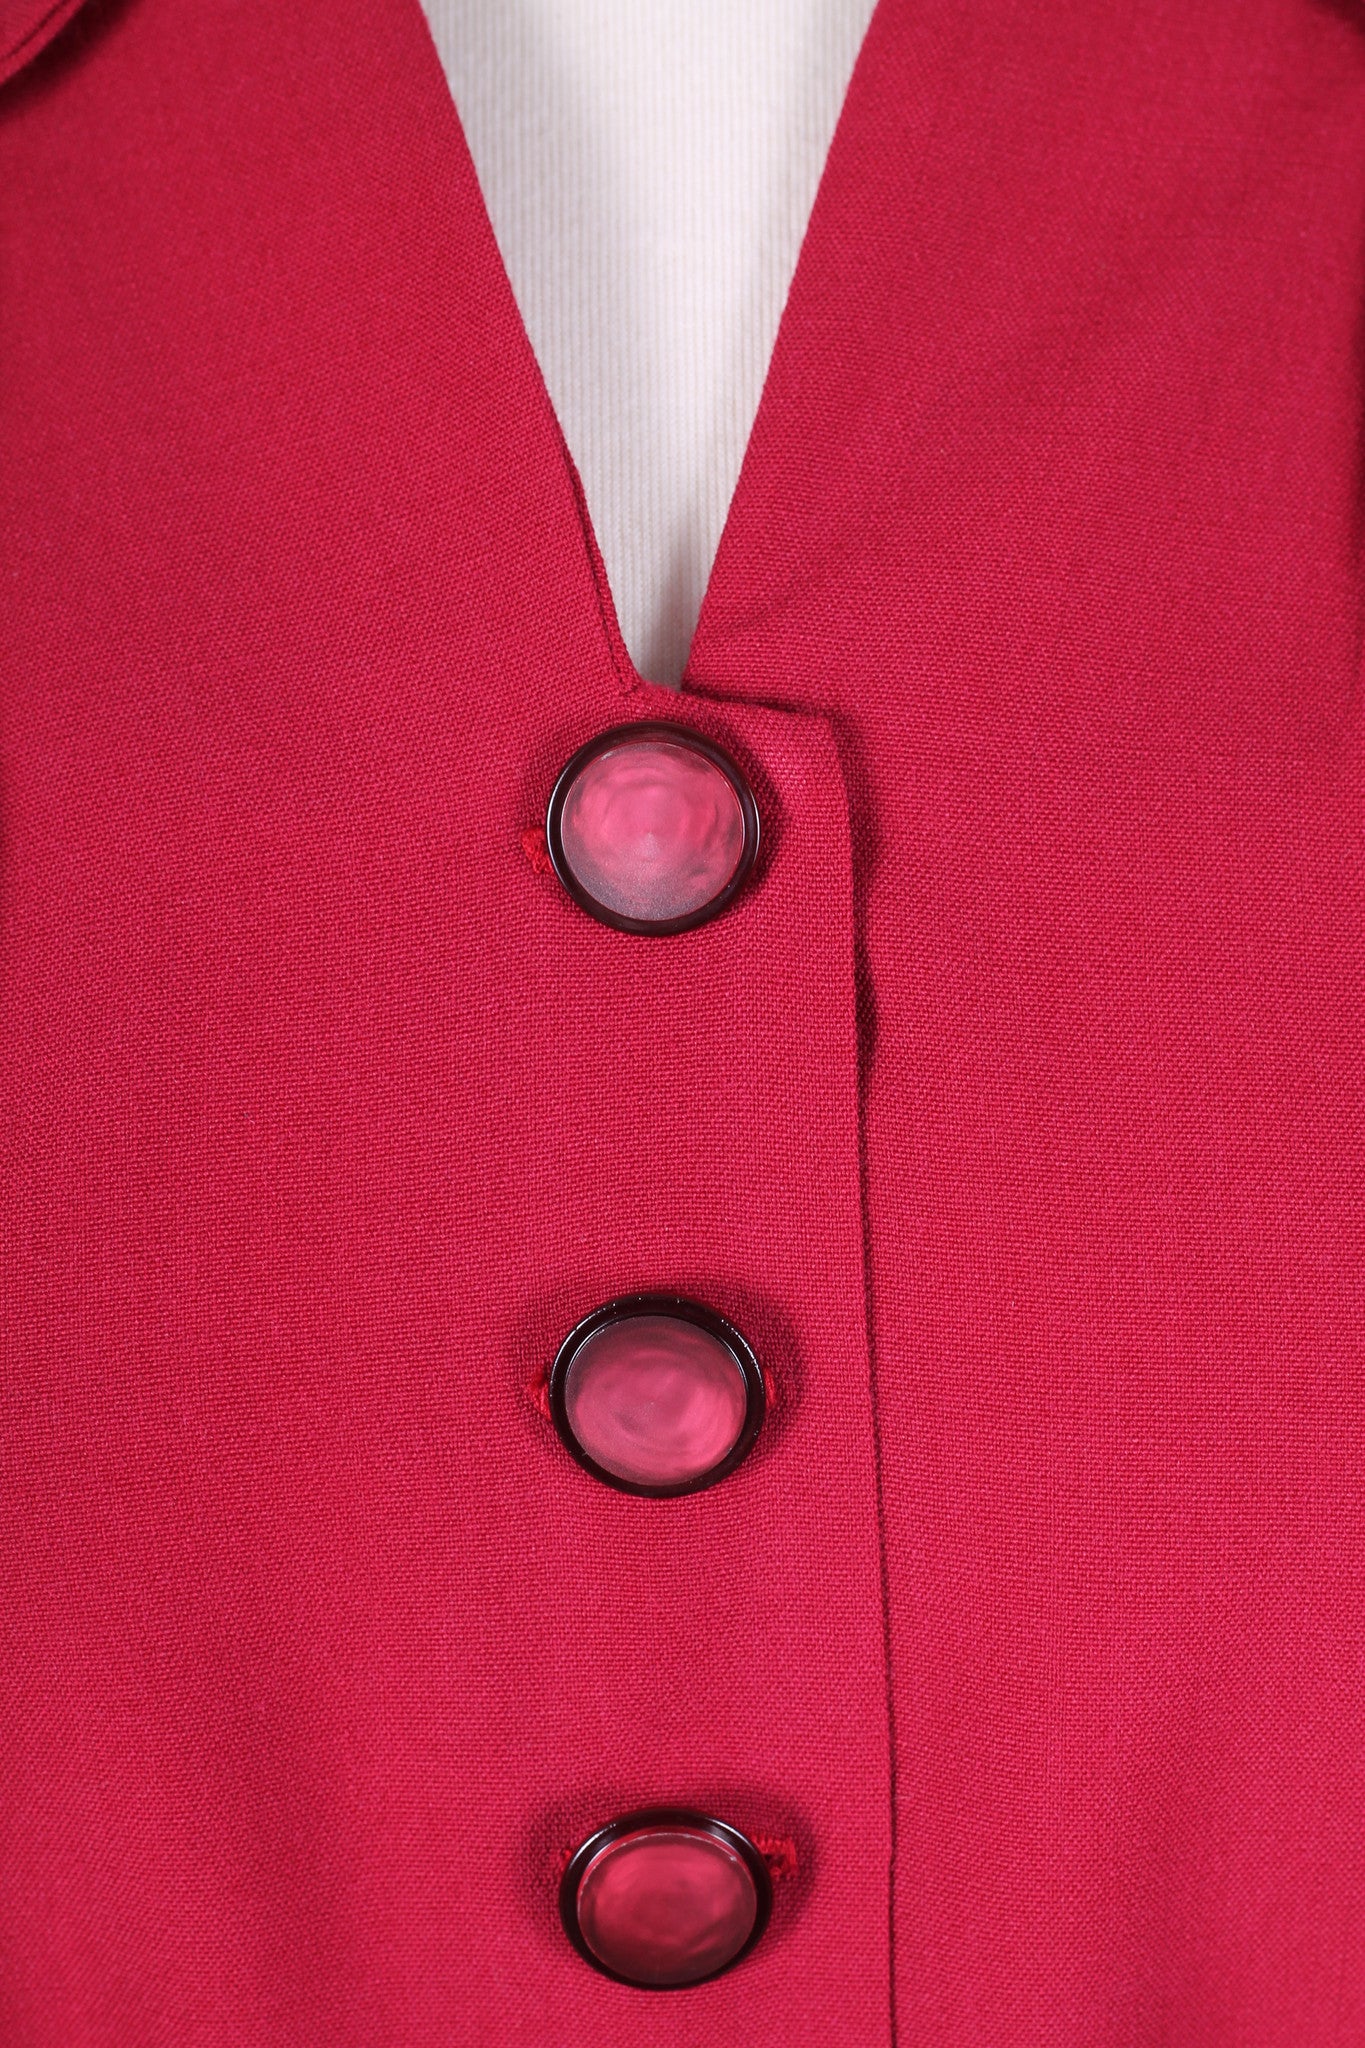 Solgt vintage tøj - Rød hverdagskjole 1940. M - Solgt - Vintage Divine - 6